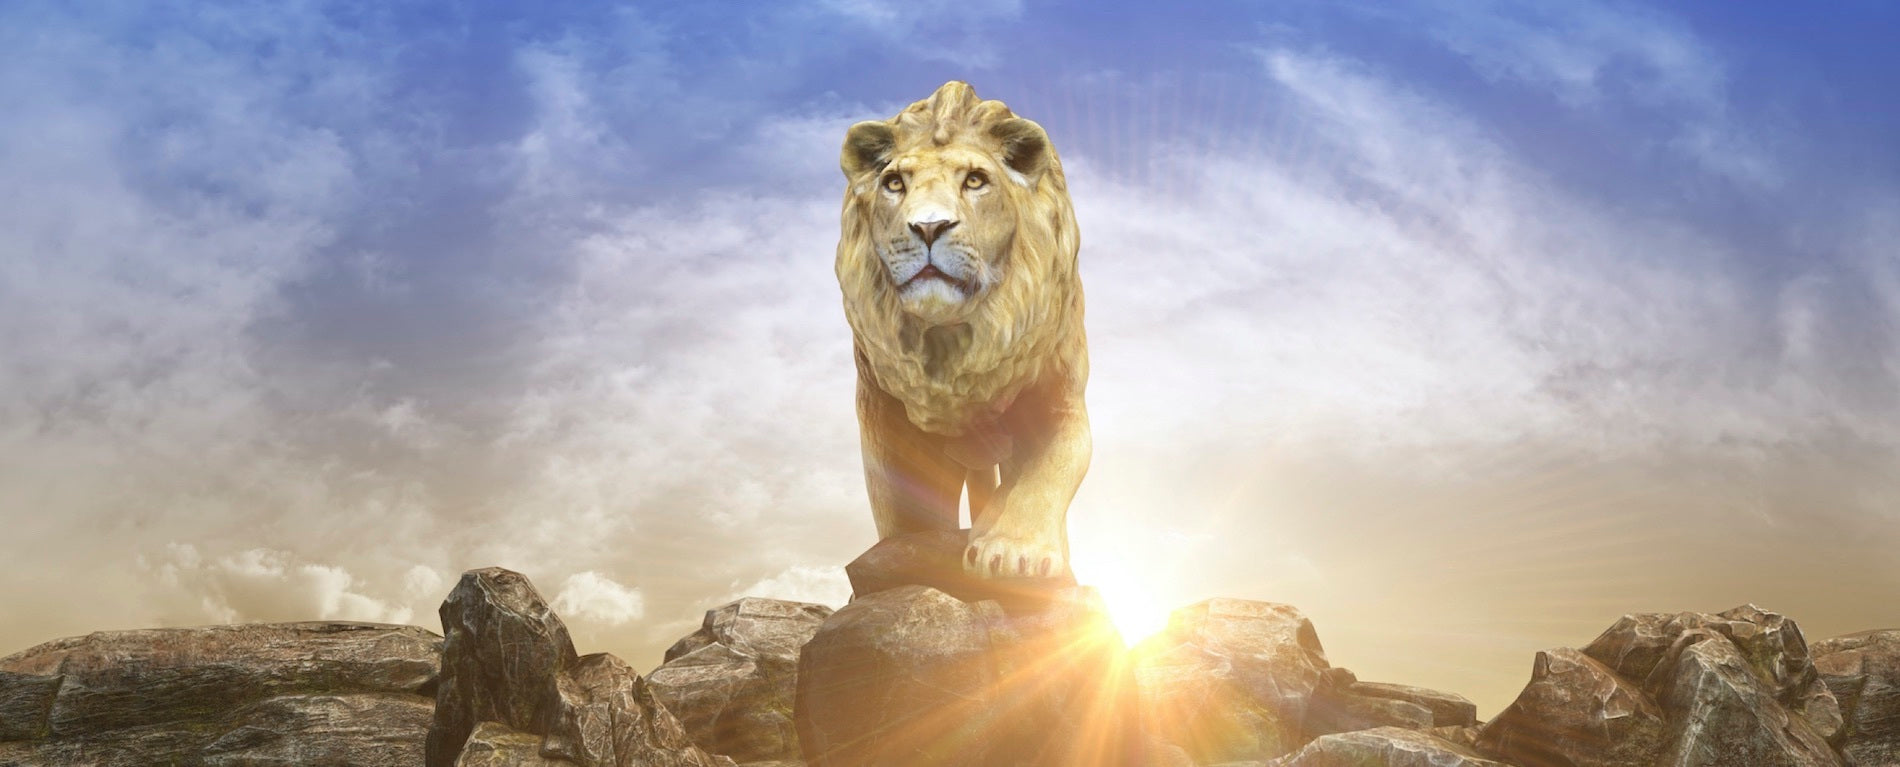 Roi Lion sur le rocher des lions en Afrique